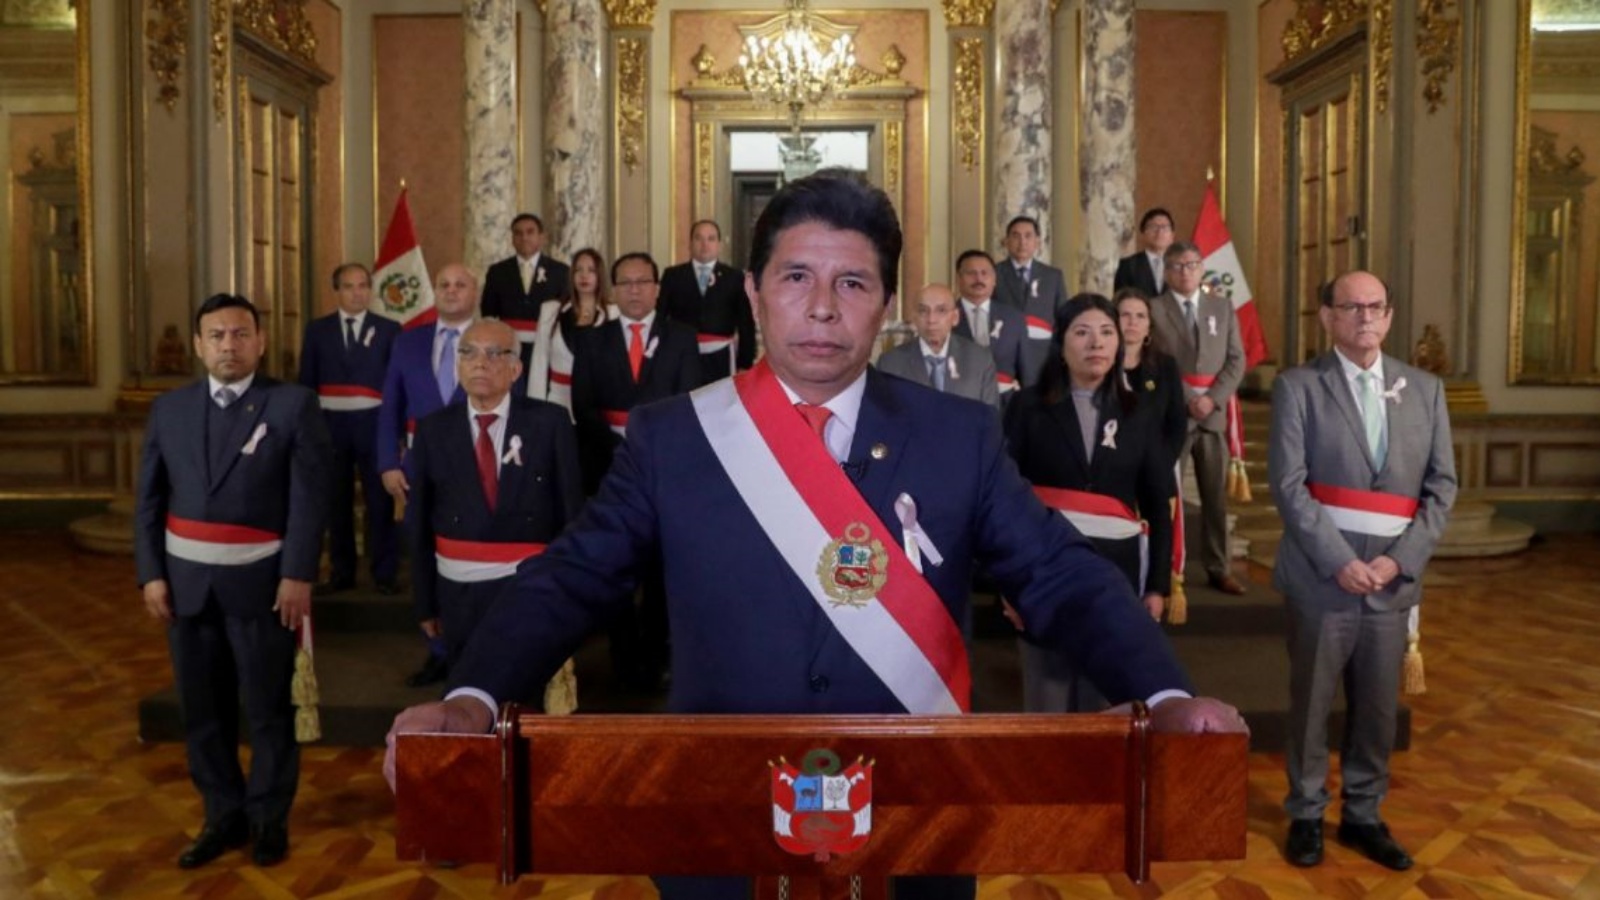 الرئيس البيروفي بيدرو كاستيلو يسلم رسالة إلى الأمة من قصر الحكومة برفقة فريقه الوزاري في ليما في 19 أكتوبر